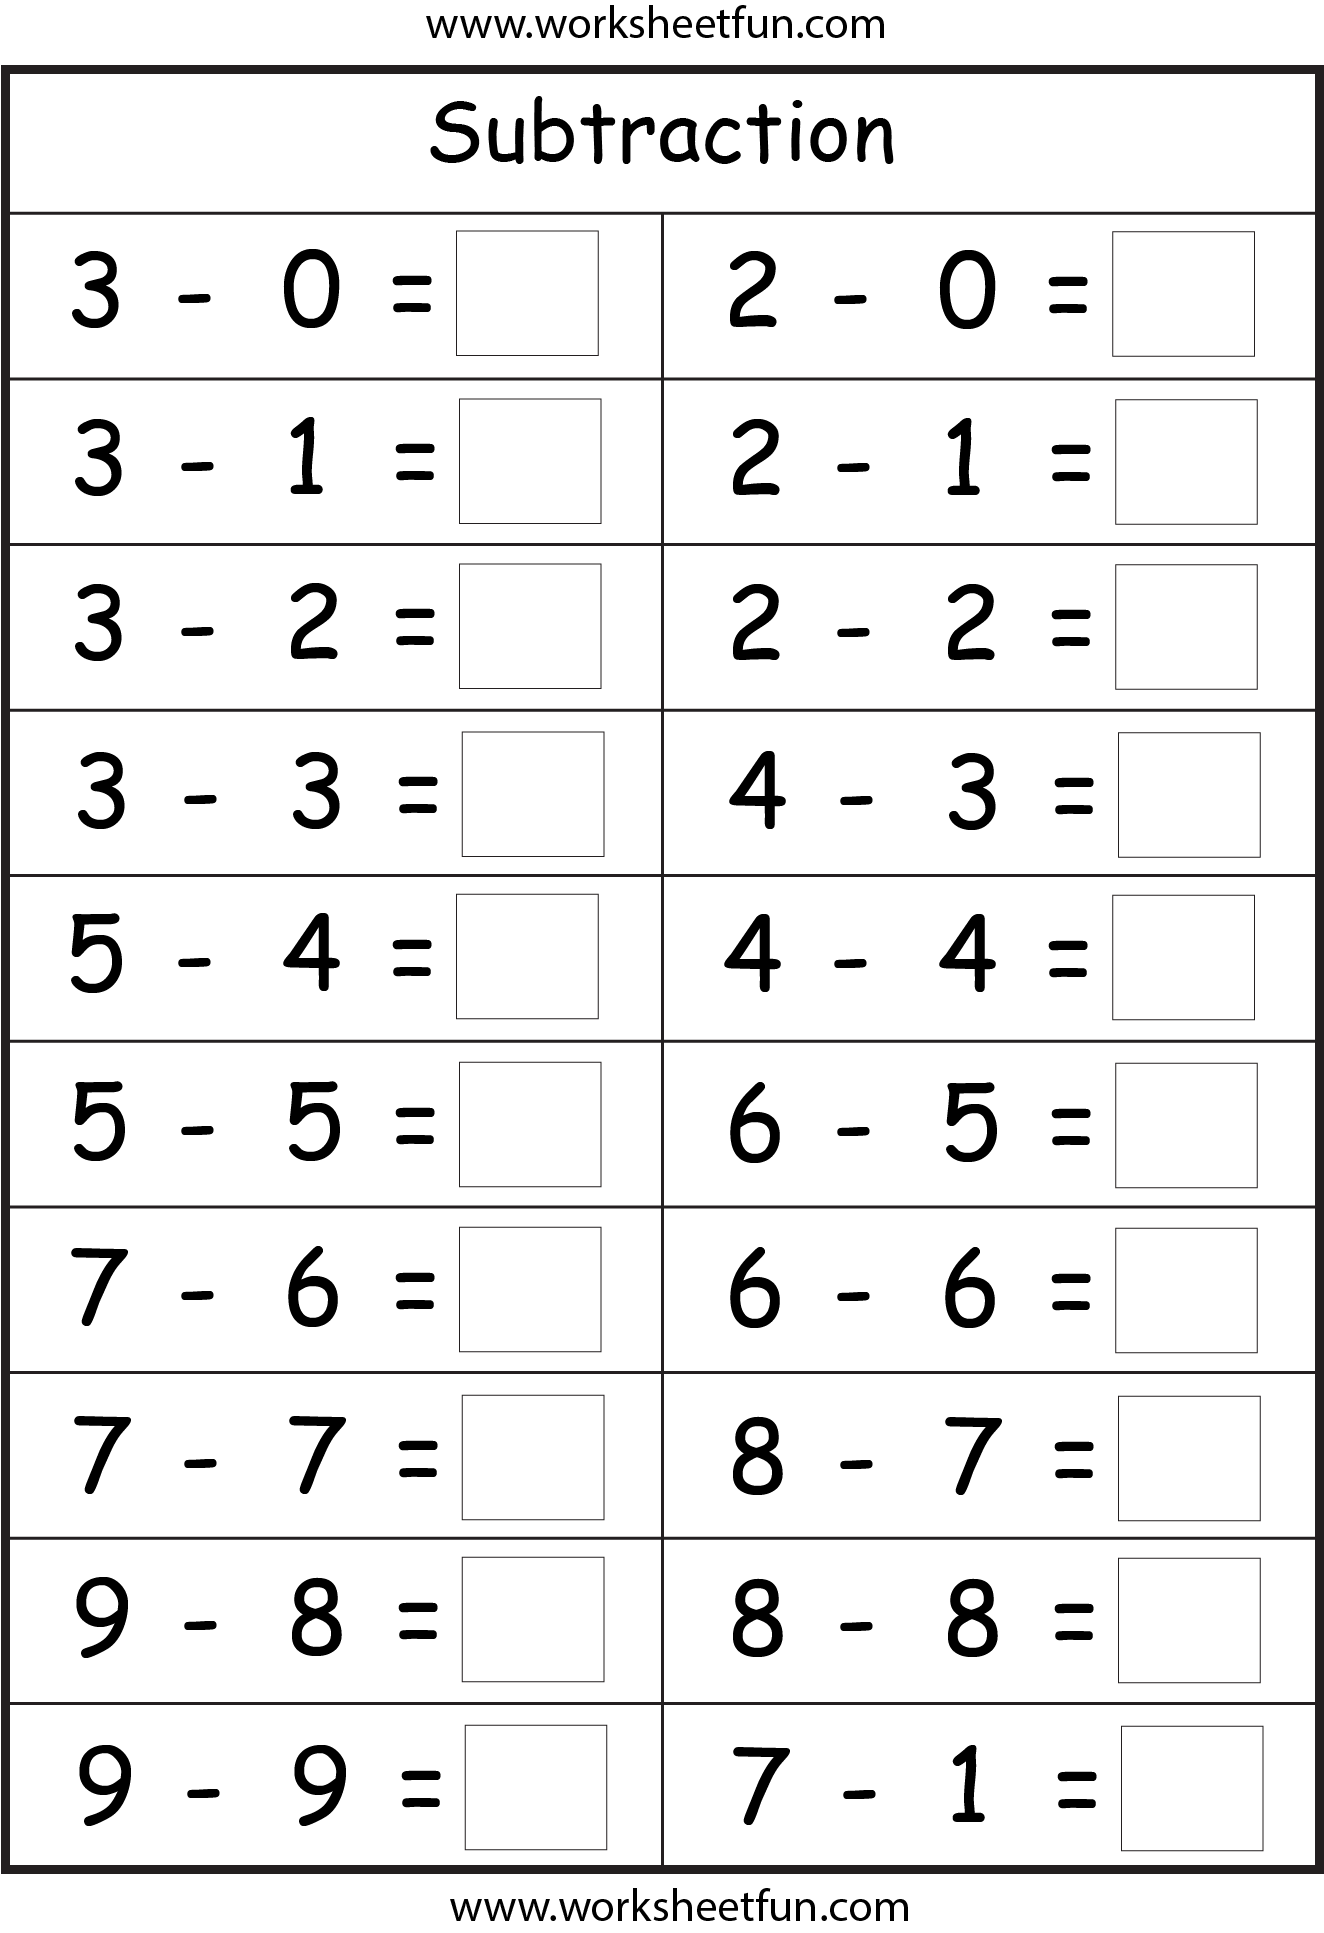 subtraction-4-worksheets-free-printable-worksheets-worksheetfun